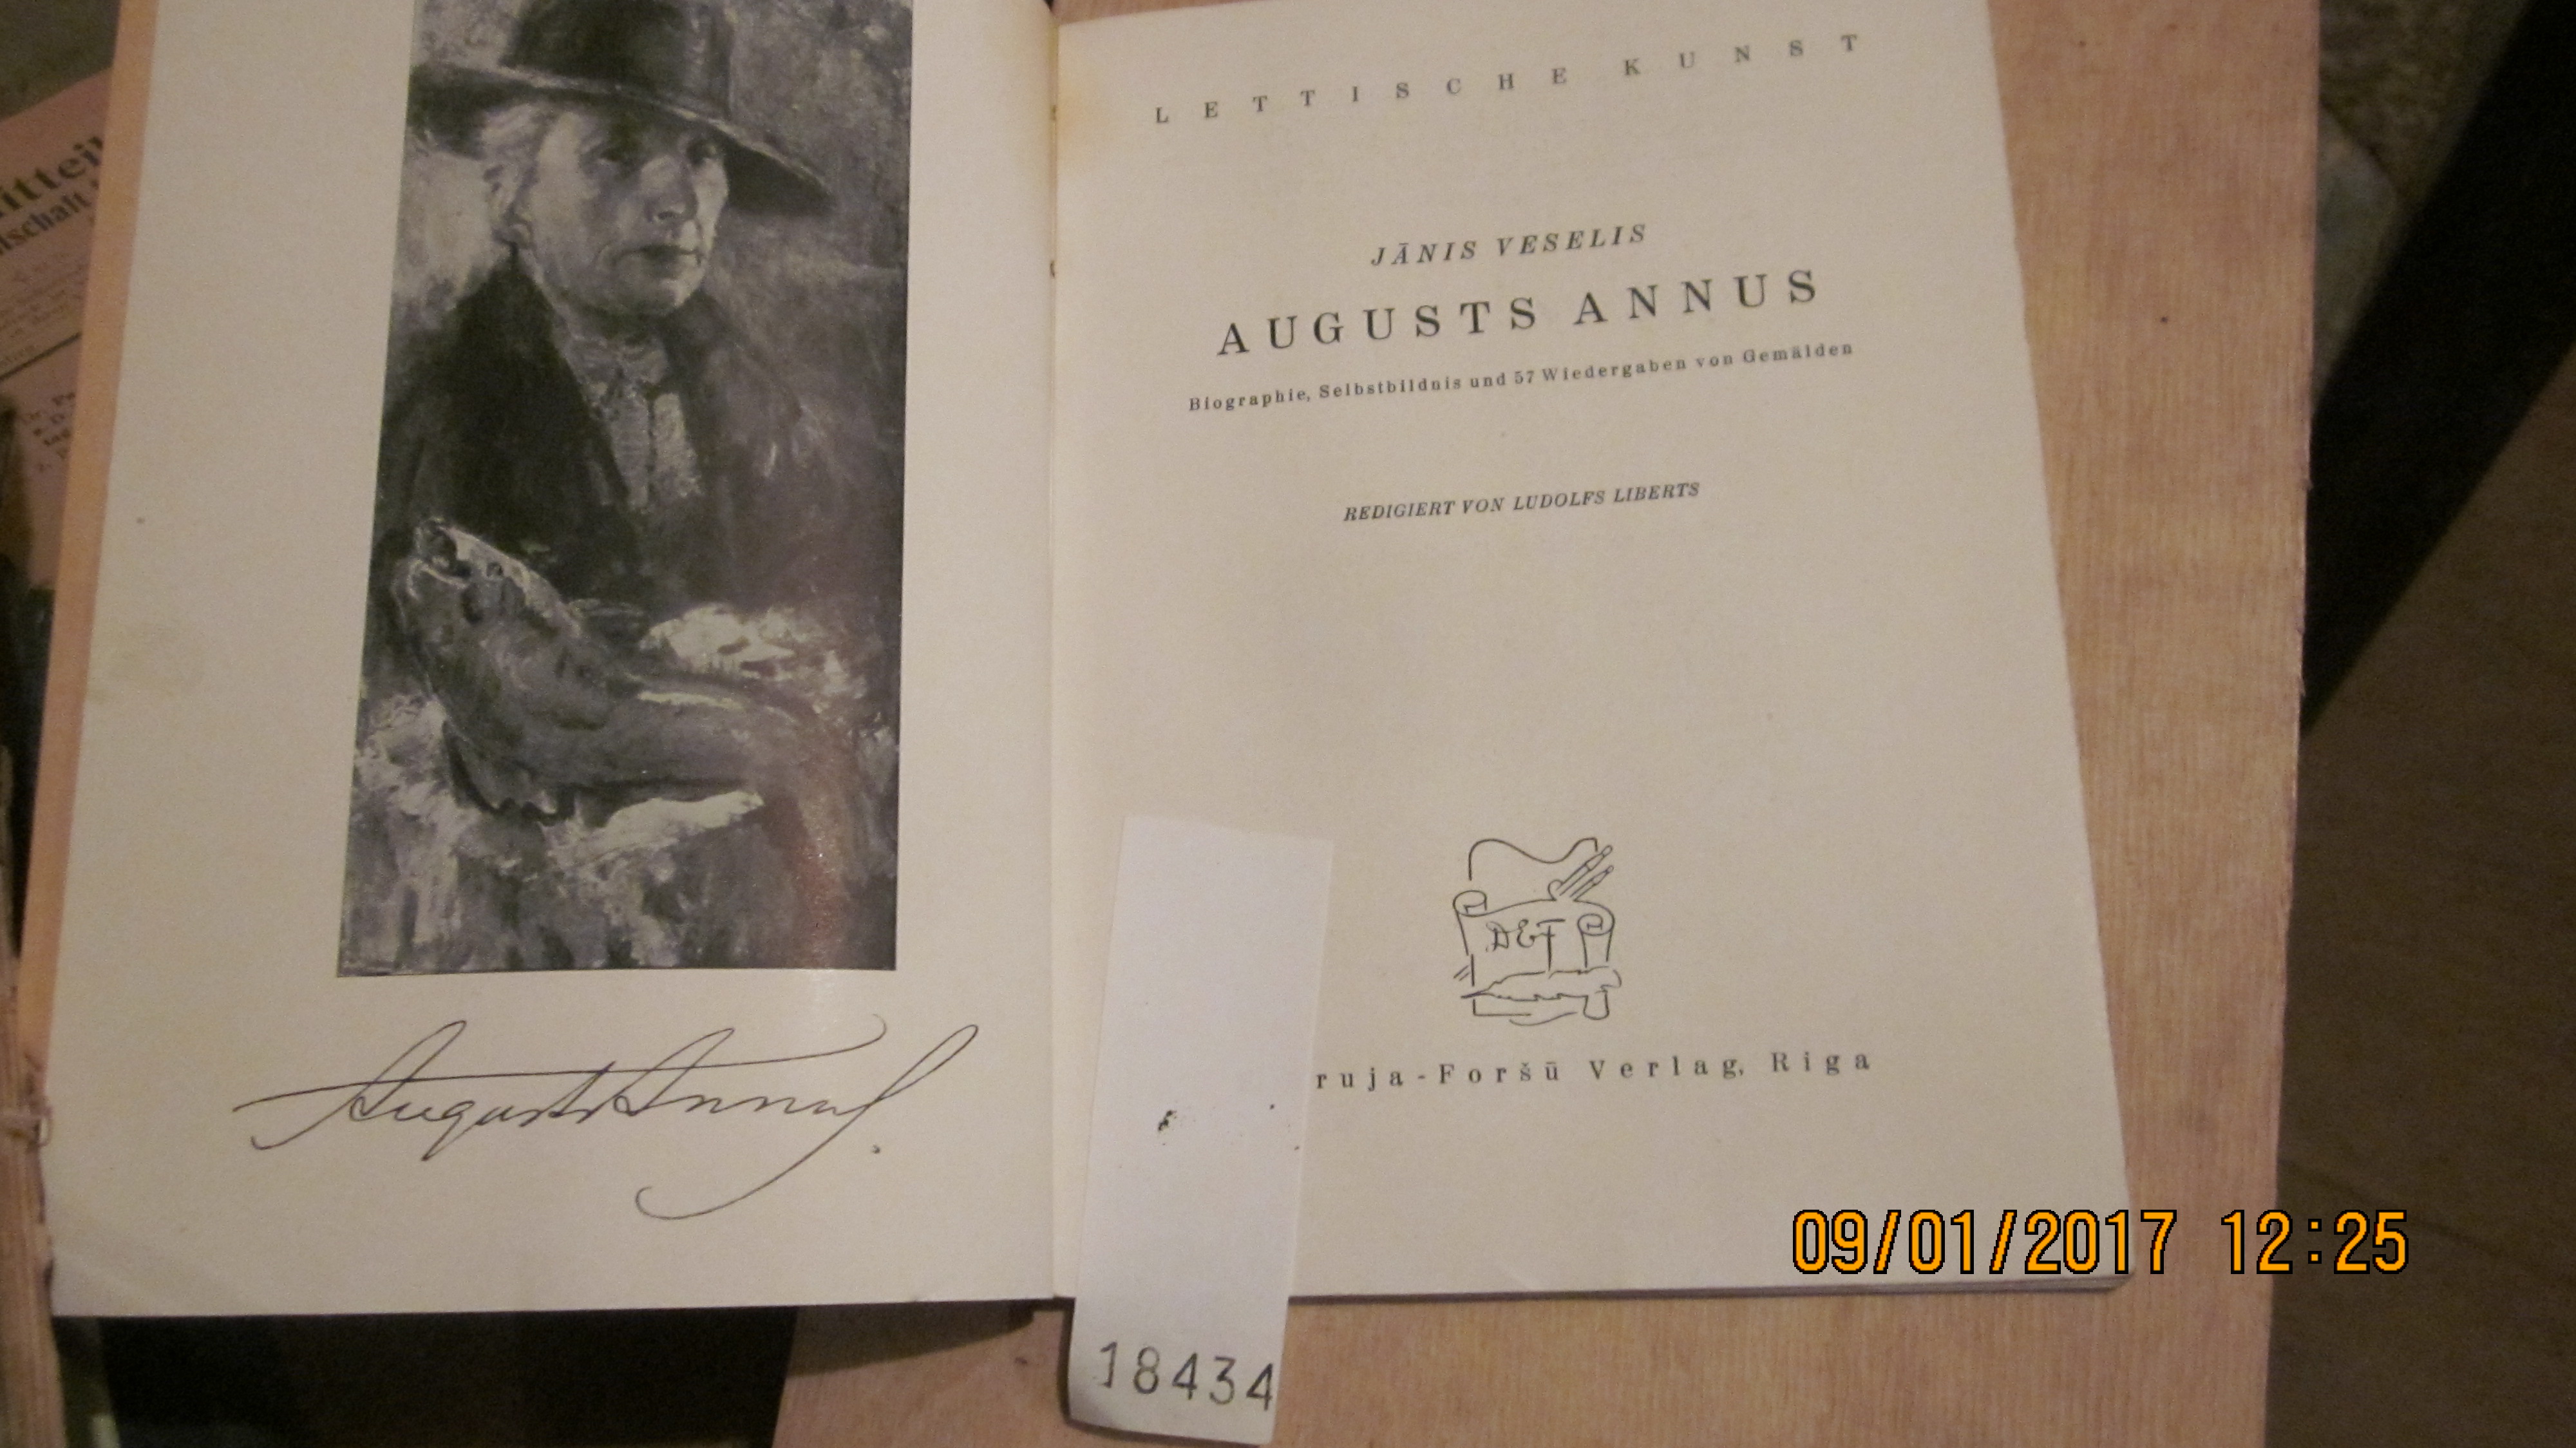 Veselis Janis  Augusts Annus  Biographie, Selbstbildnis und 57 Wiedergaben von Gemälden 